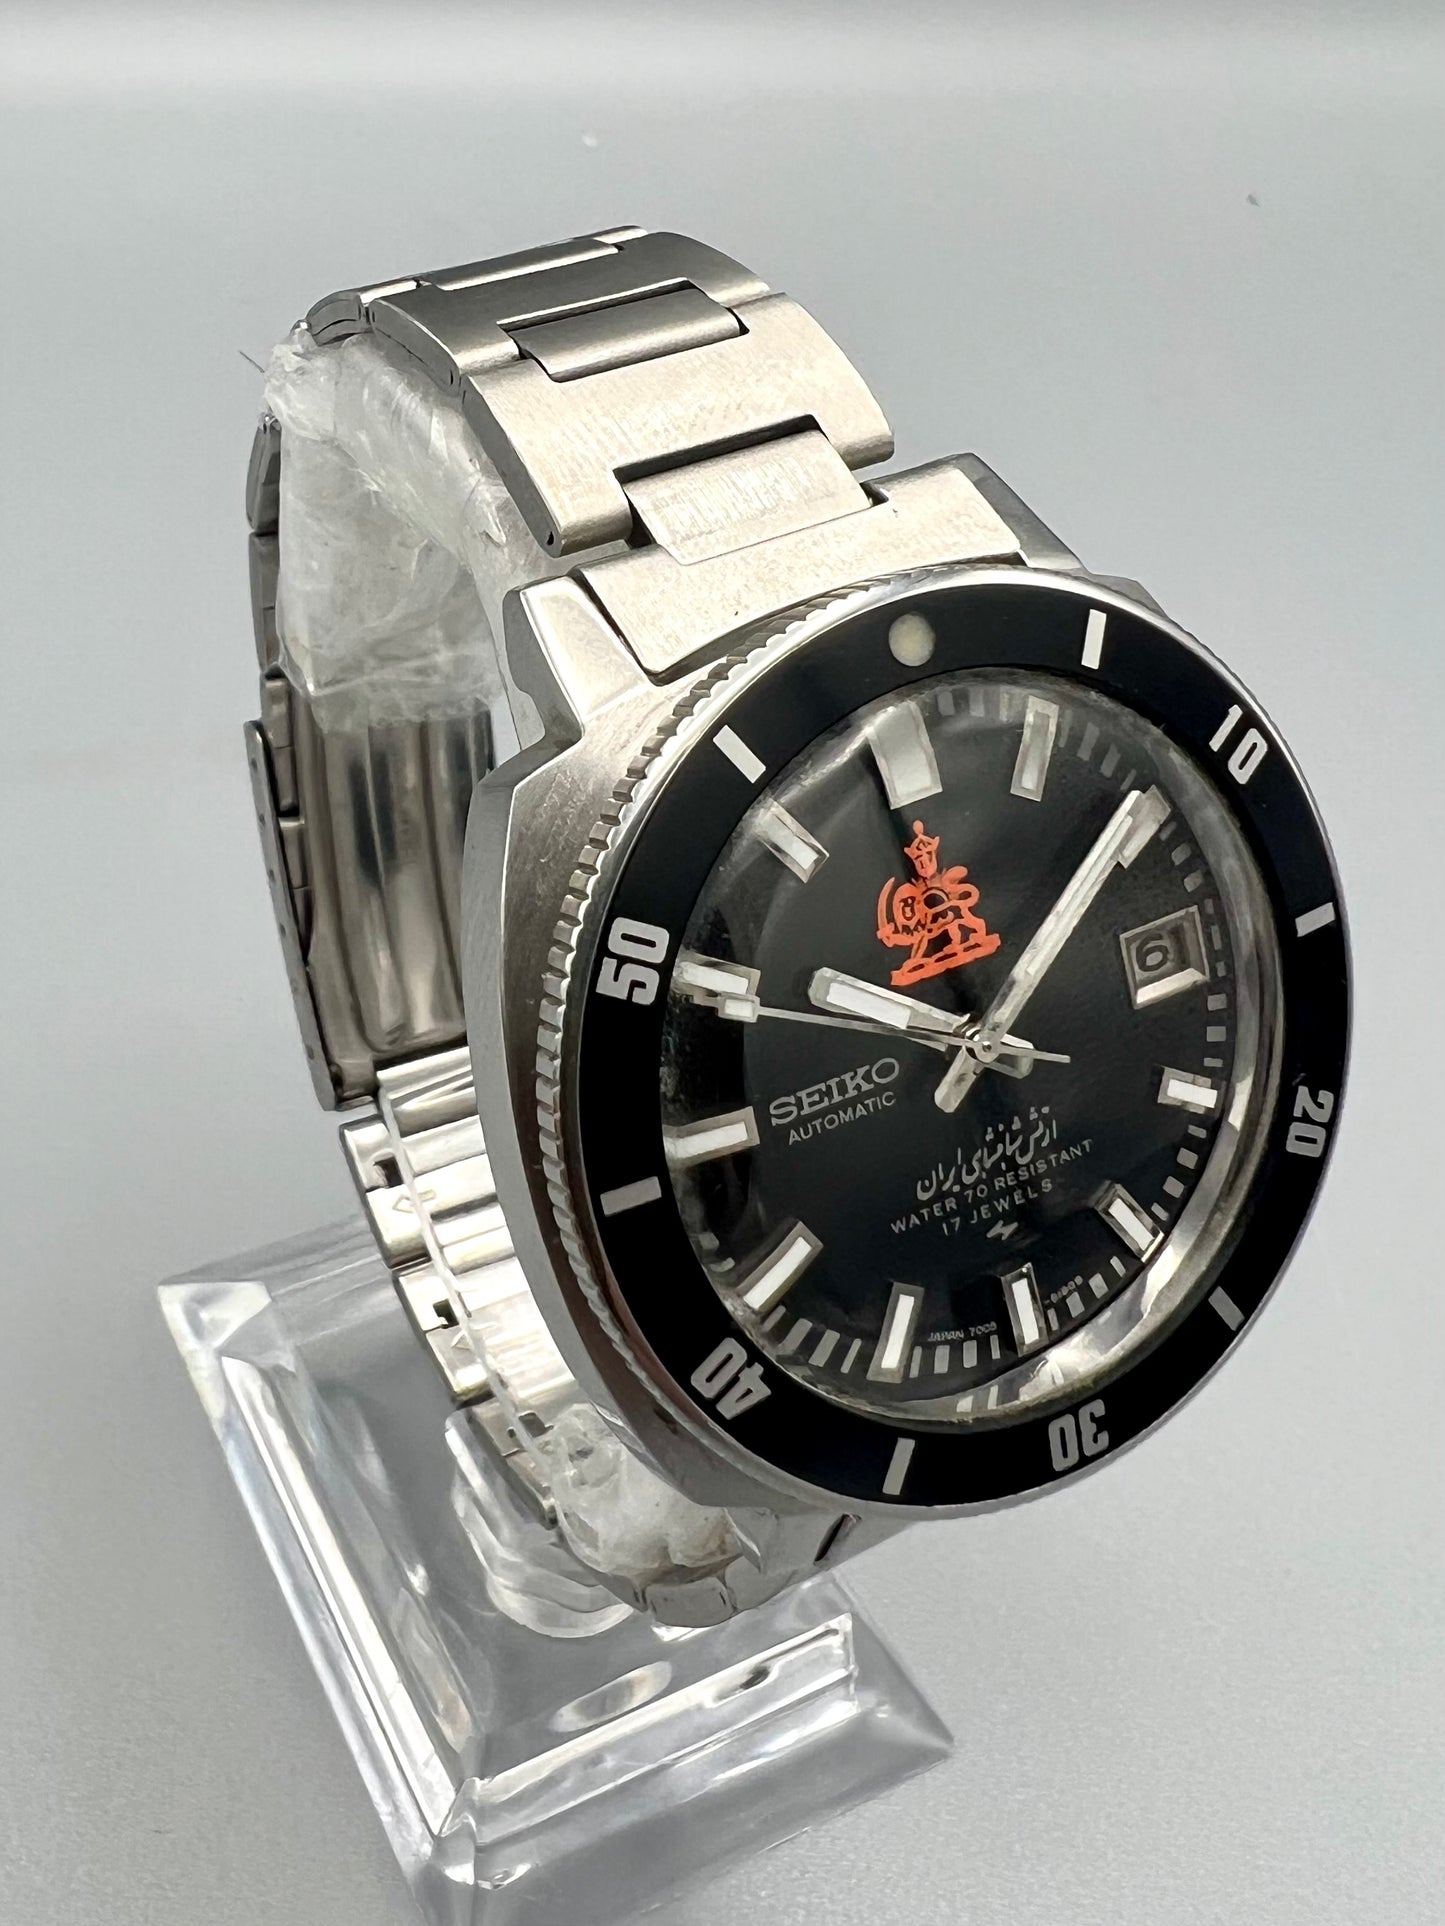 Seiko Ref 7005-8140, Rare Iranian Royal Army Stainless Steel Watch, Circa 1970